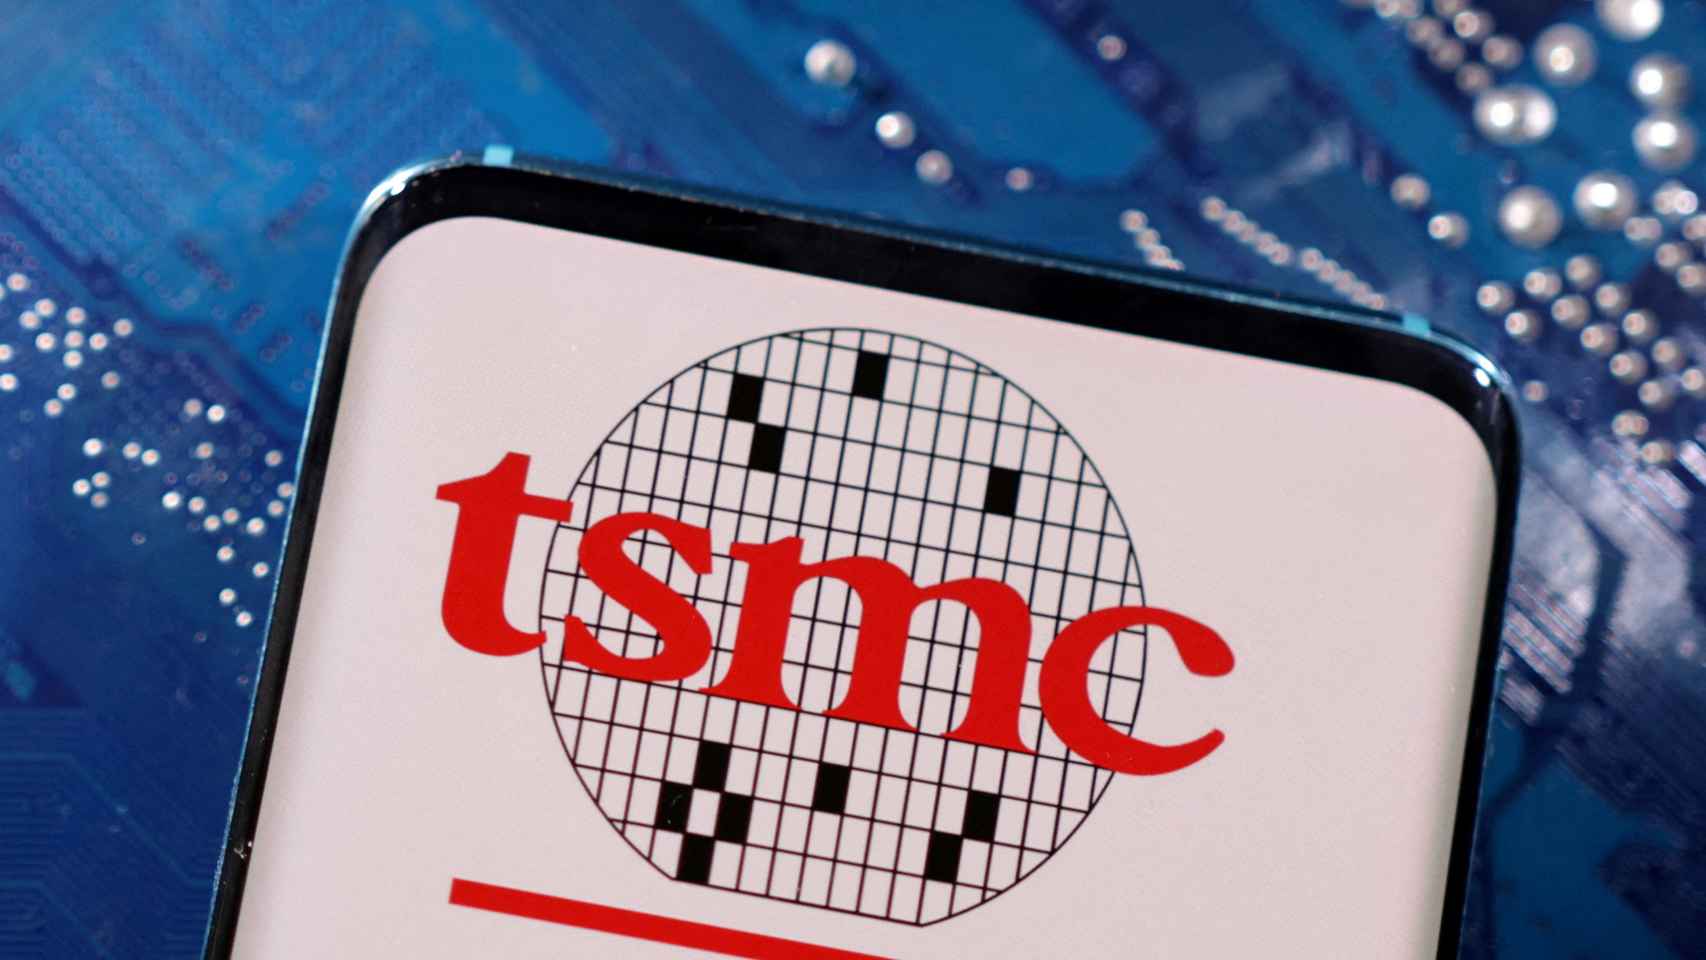 Logo de la compañía de semiconductores TSMC en la pantalla de un teléfono móvil delante de un chip.